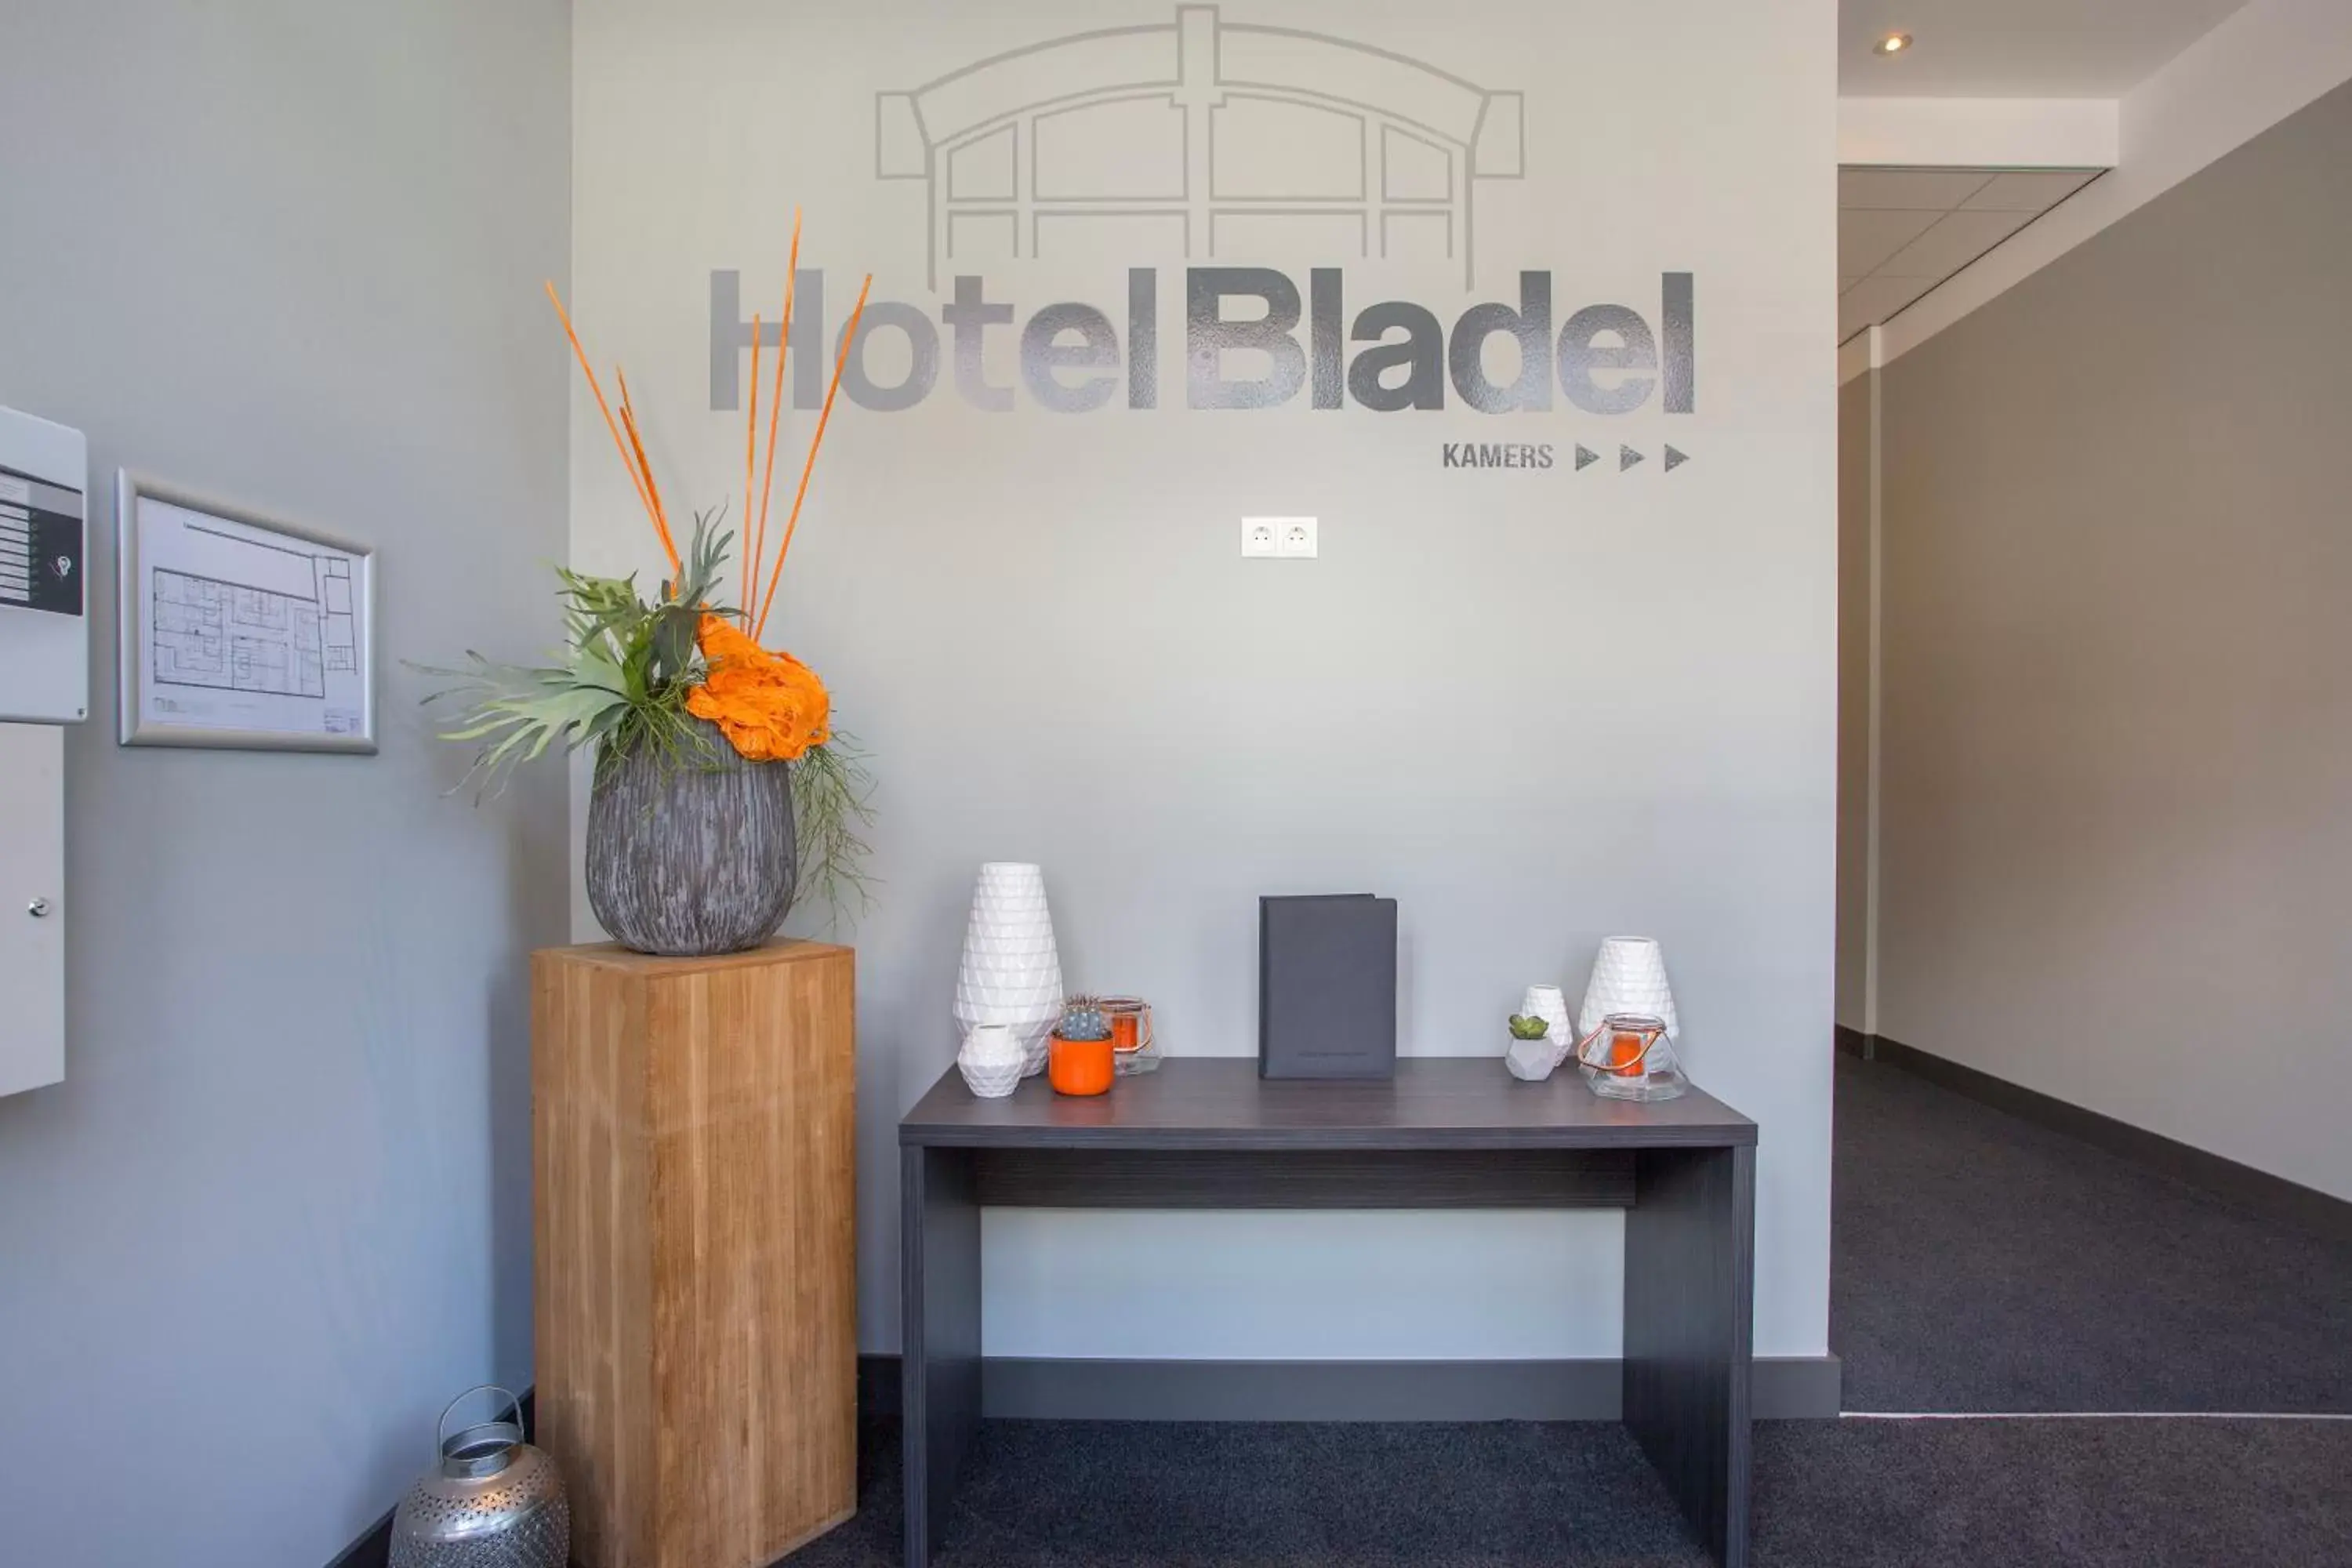 Facade/entrance in Hotel Bladel